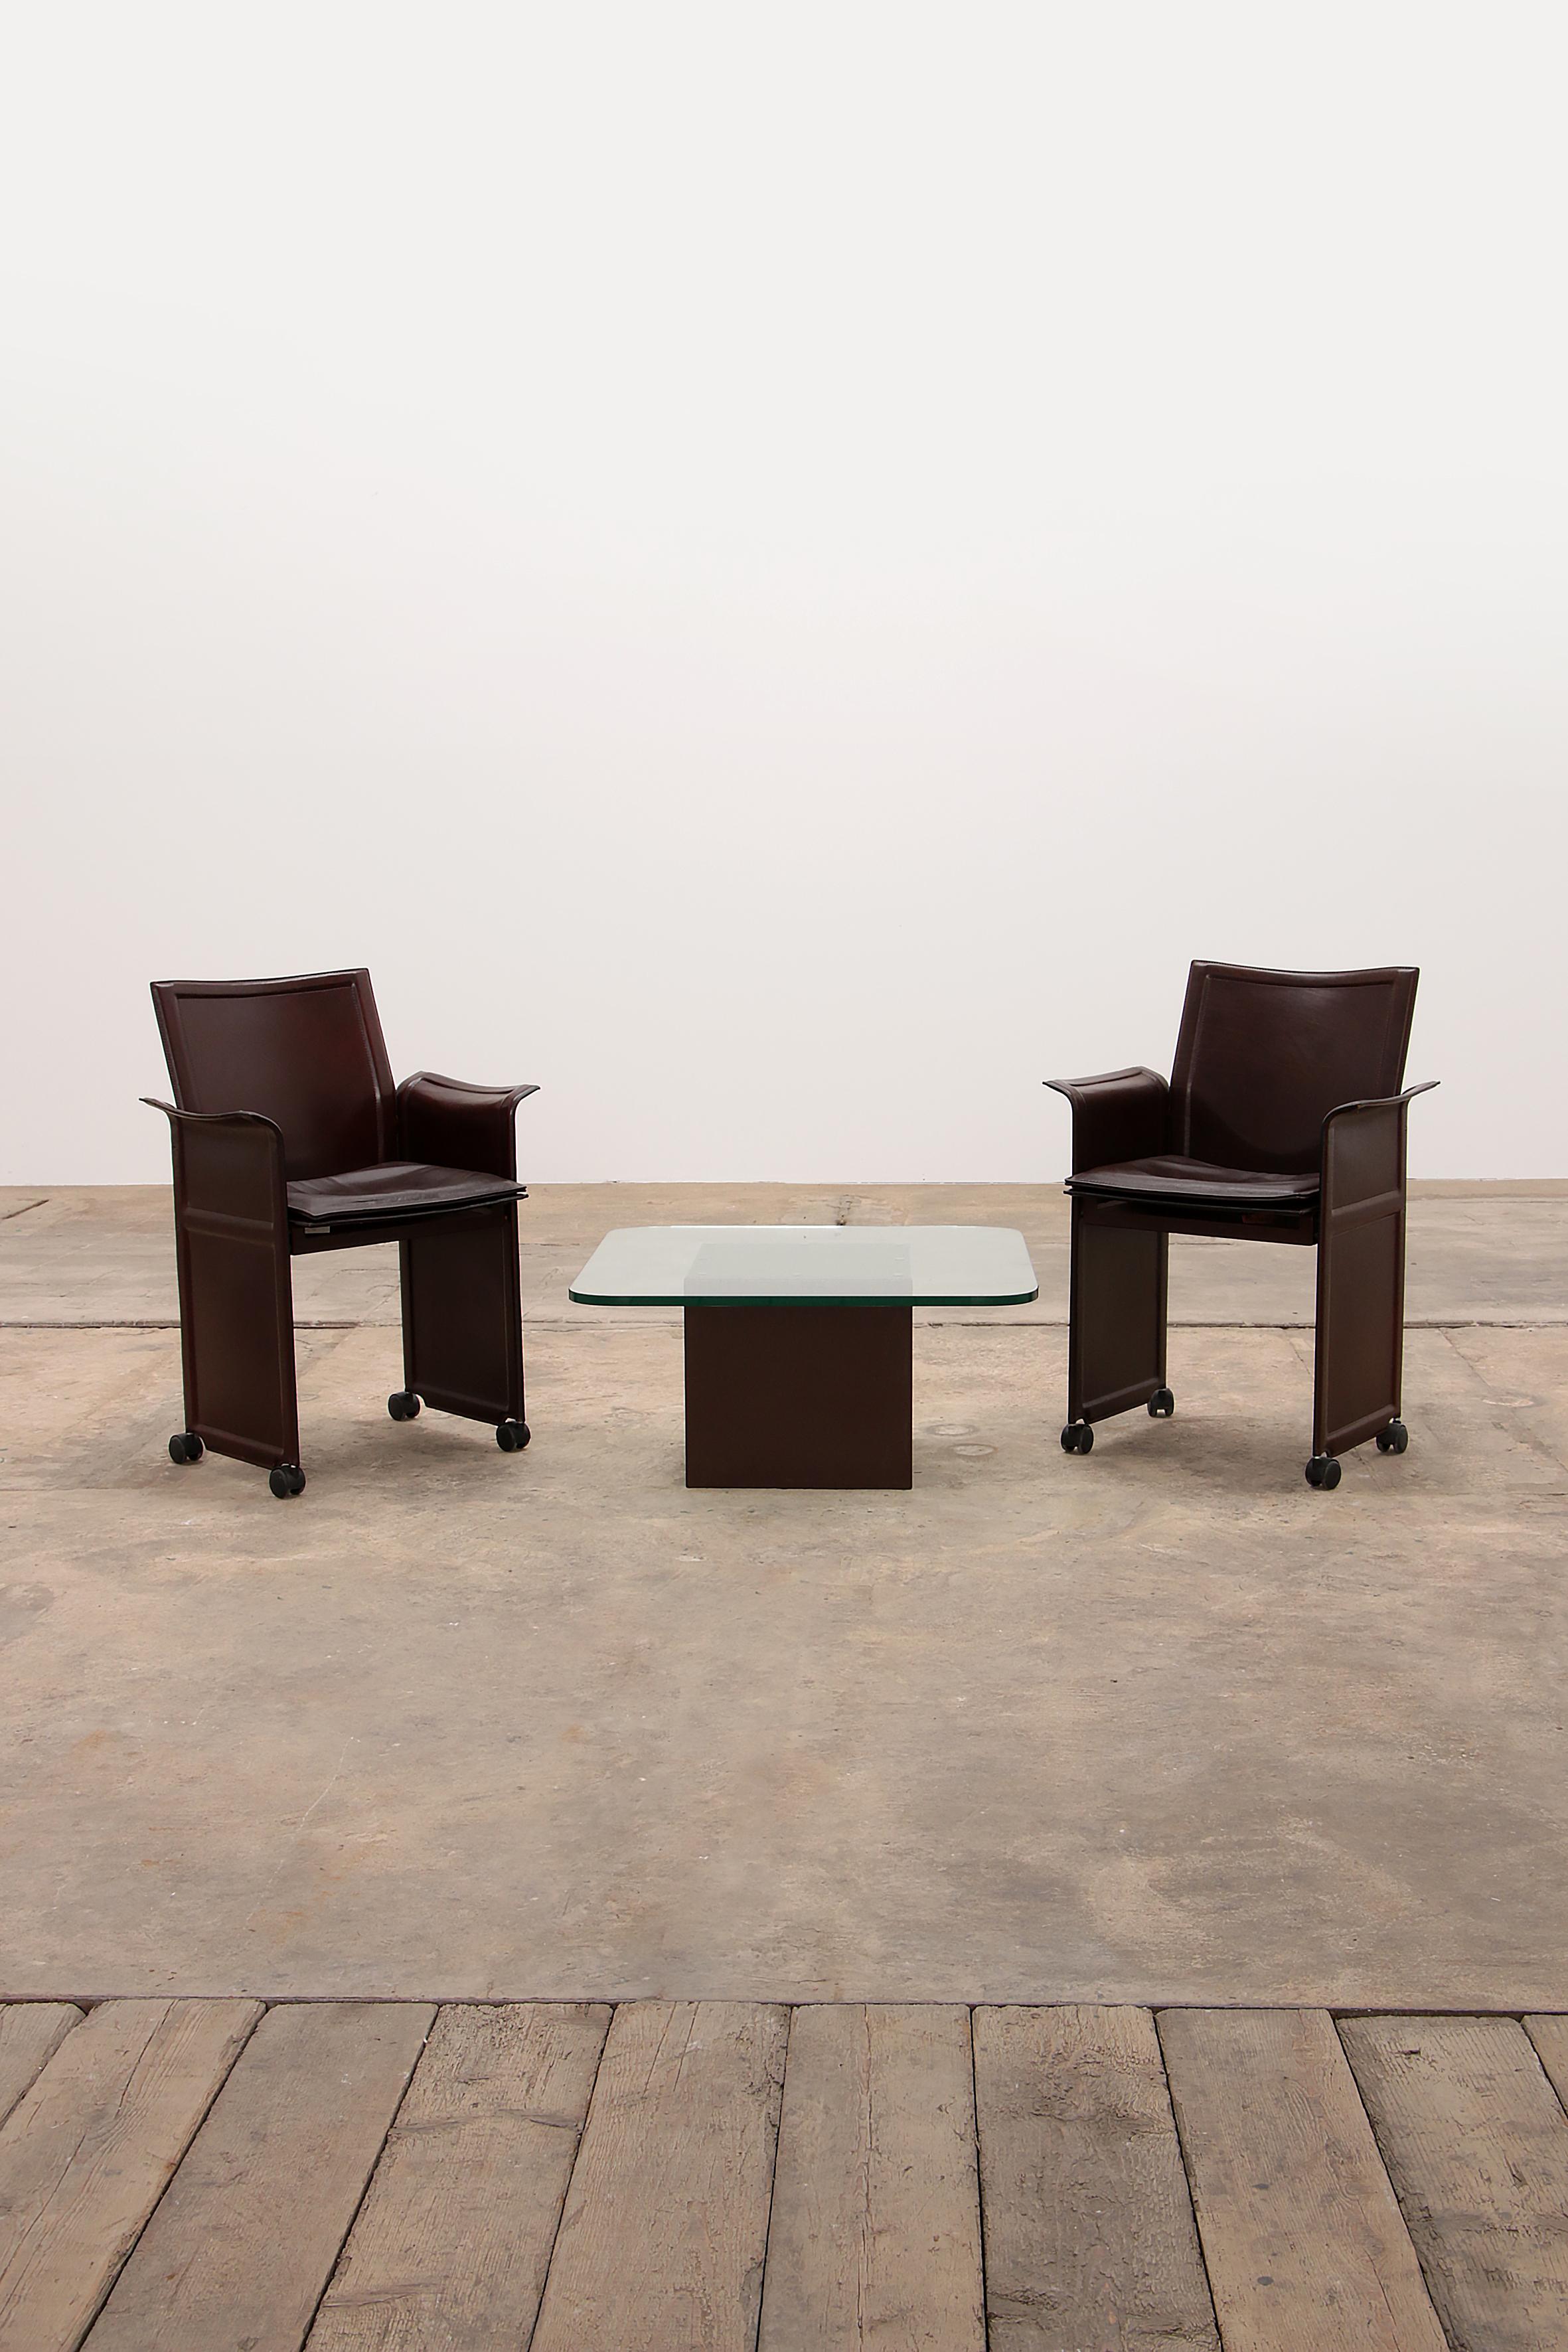 
Modernes Set aus 2 schokoladenbraunen Vintage-Stühlen, entworfen von Tito Agnoli für Matteo Grassi 1979, Italien. Mit einem Couchtisch. Das Besondere an dem Stuhlmodell Korium ist das hochwertige, gesteppte Leder mit einem Metallrahmen. Diese